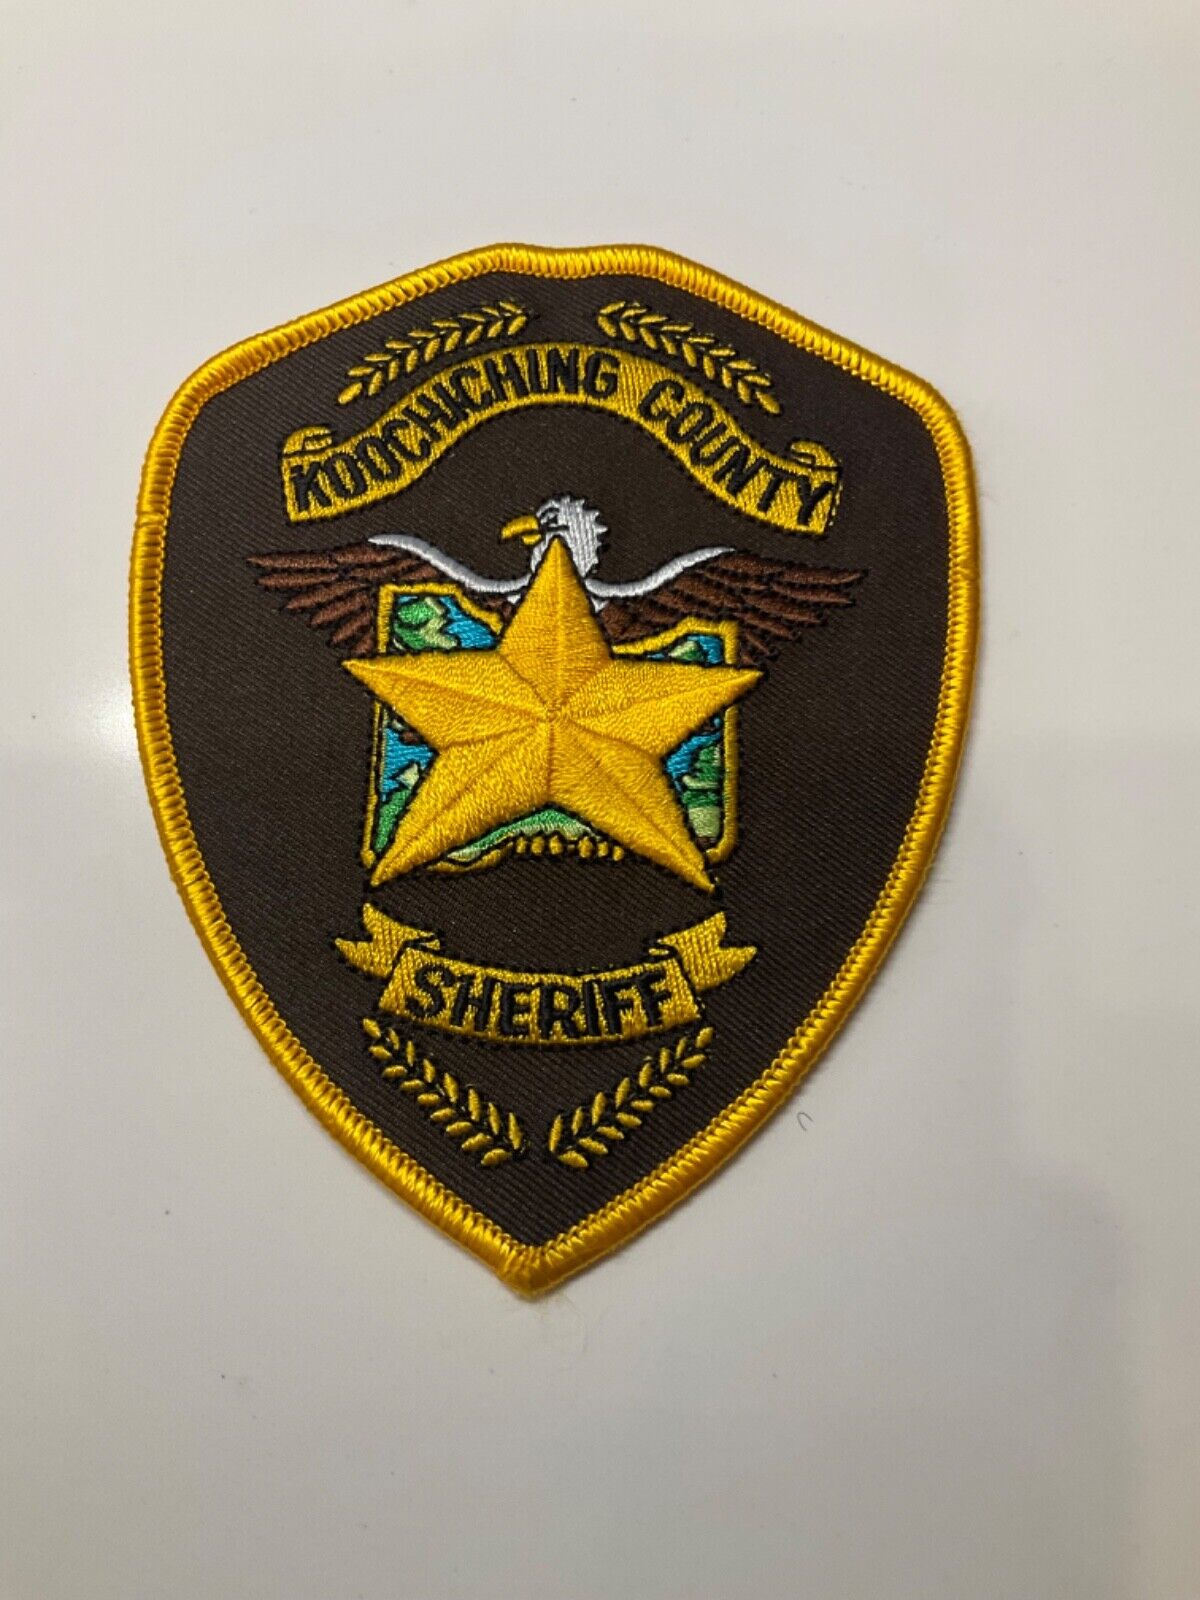 Koochiching County Sheriff State Minnesota MN